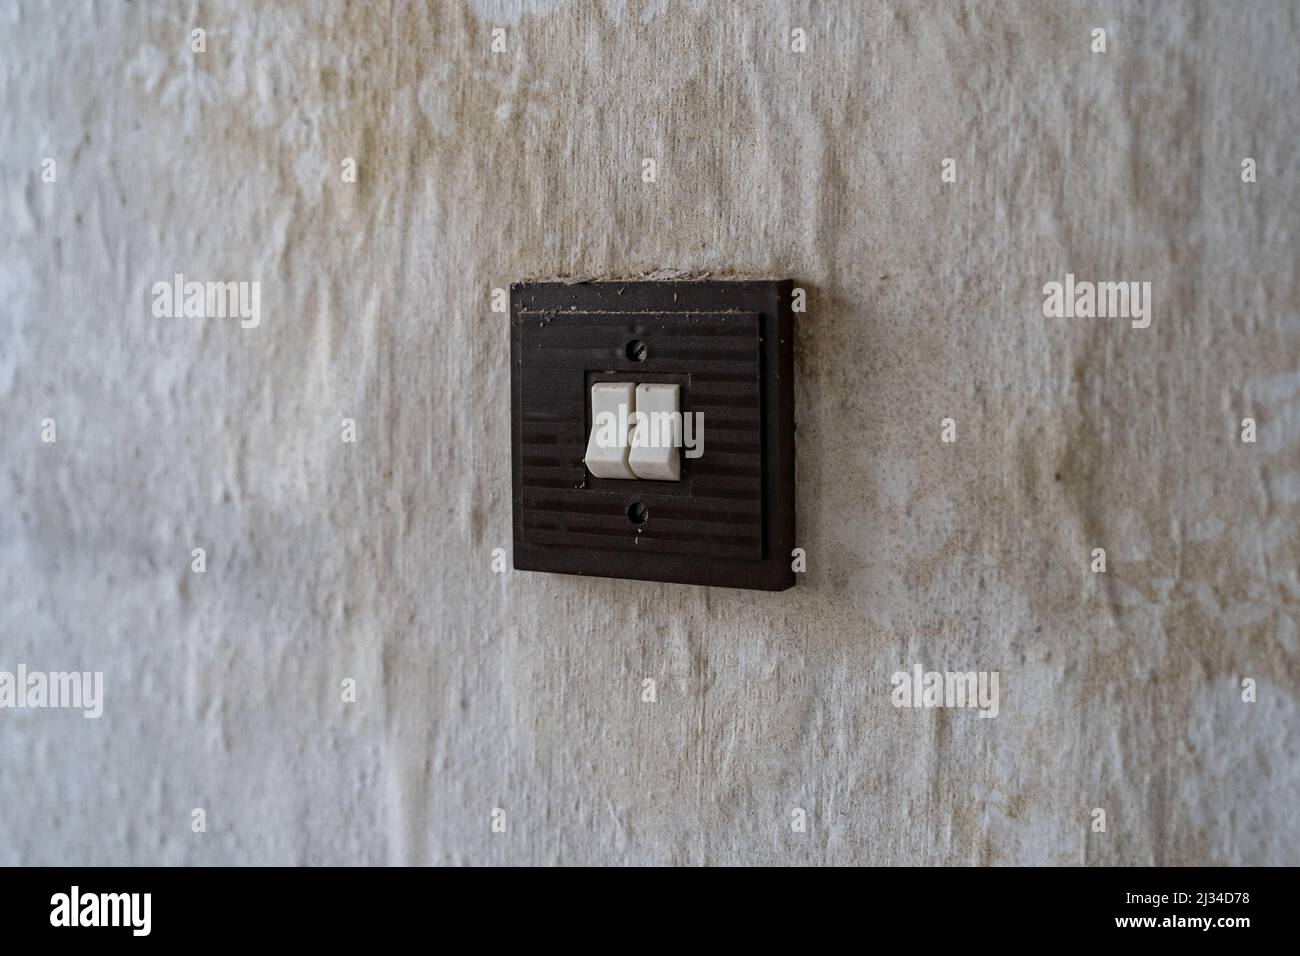 Dreckiger alter quadratischer Lichtschalter an einer Wand. Retro-Kippschalter in einer ostdeutschen Wohnung. Innenarchitektur der Vergangenheit in einem schlechten Zustand. Schmutzflecken Stockfoto